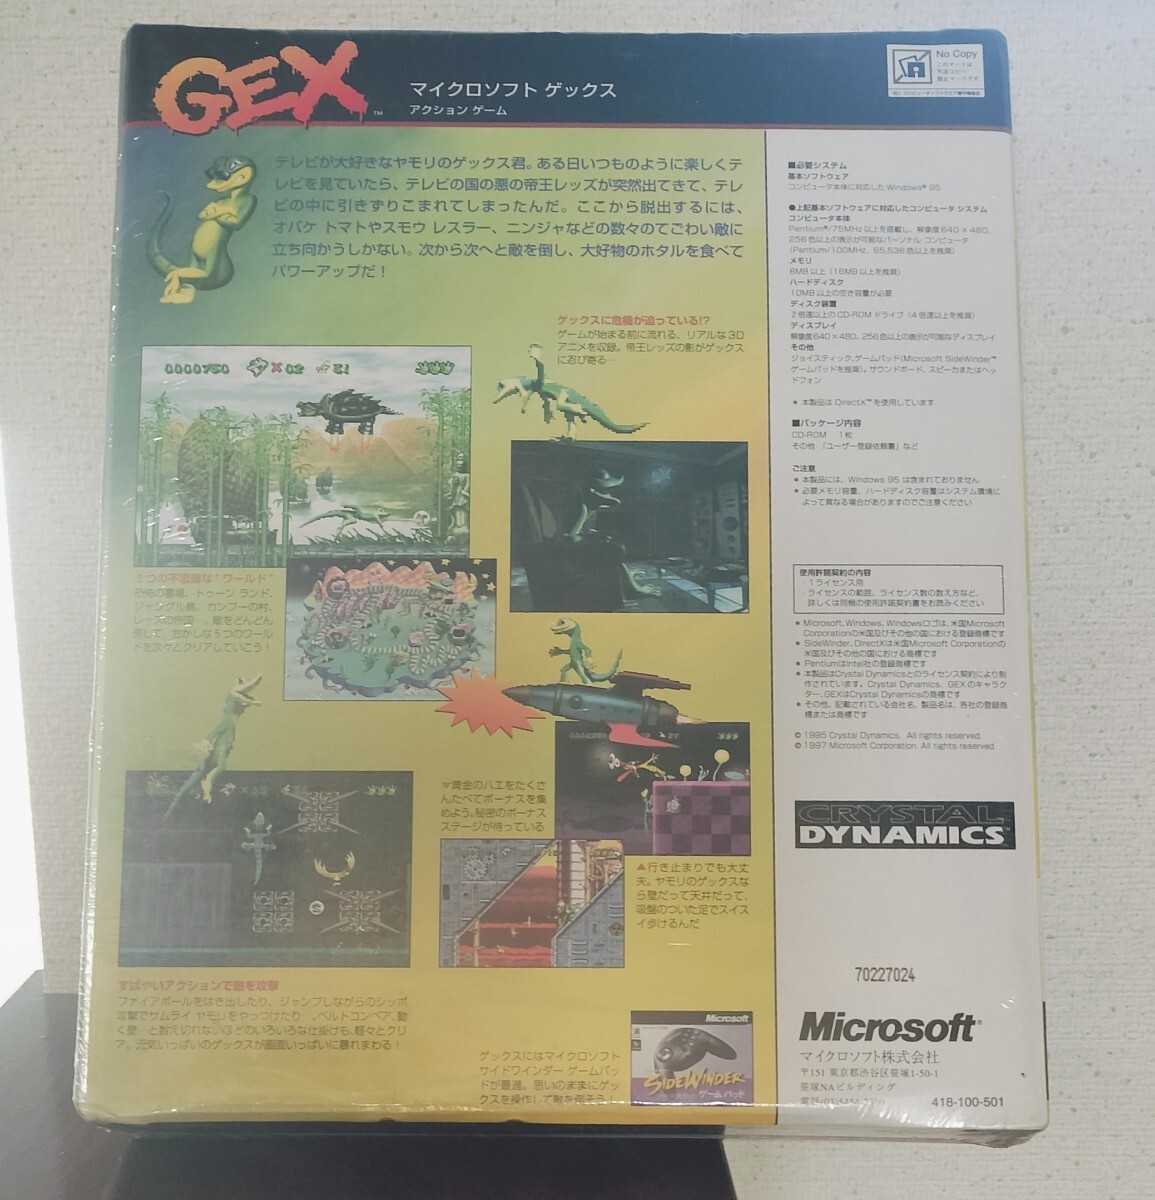 マイクロソフト ゲックス 日本語版 GEX PCゲーム 新品未開封 Windows95 98 me xp 箱付完品 Microsoft エイドス スクエア・エニックスの画像2